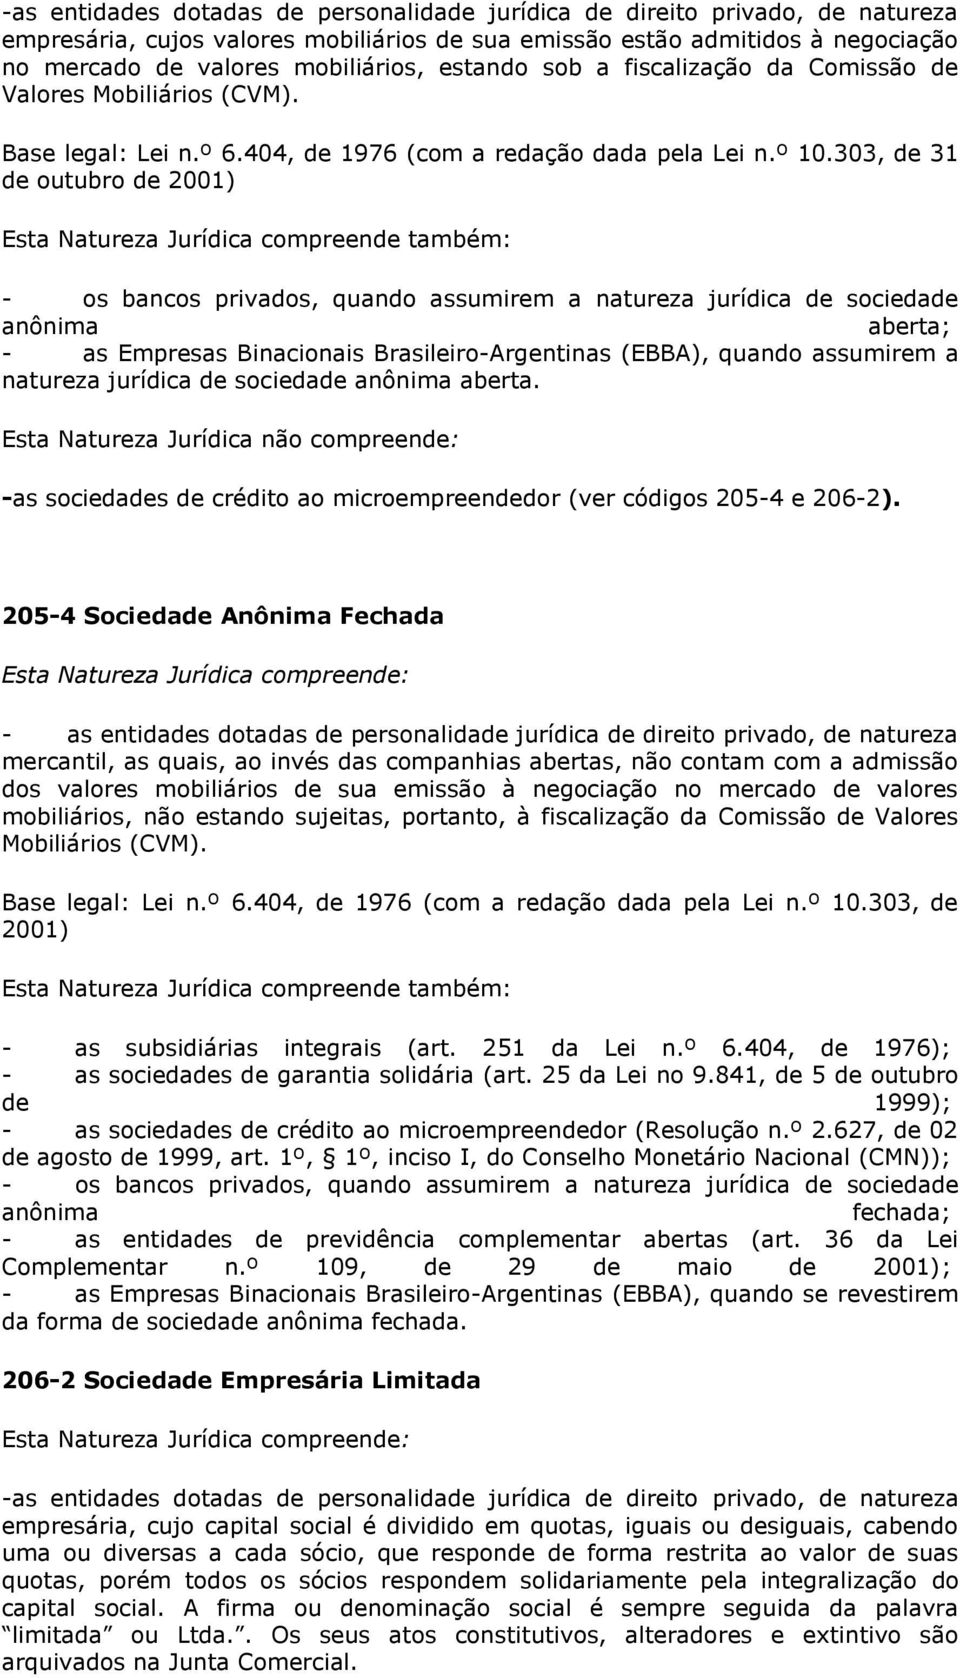 303, de 31 de outubro de 2001) - os bancos privados, quando assumirem a natureza jurídica de sociedade anônima aberta; - as Empresas Binacionais Brasileiro-Argentinas (EBBA), quando assumirem a